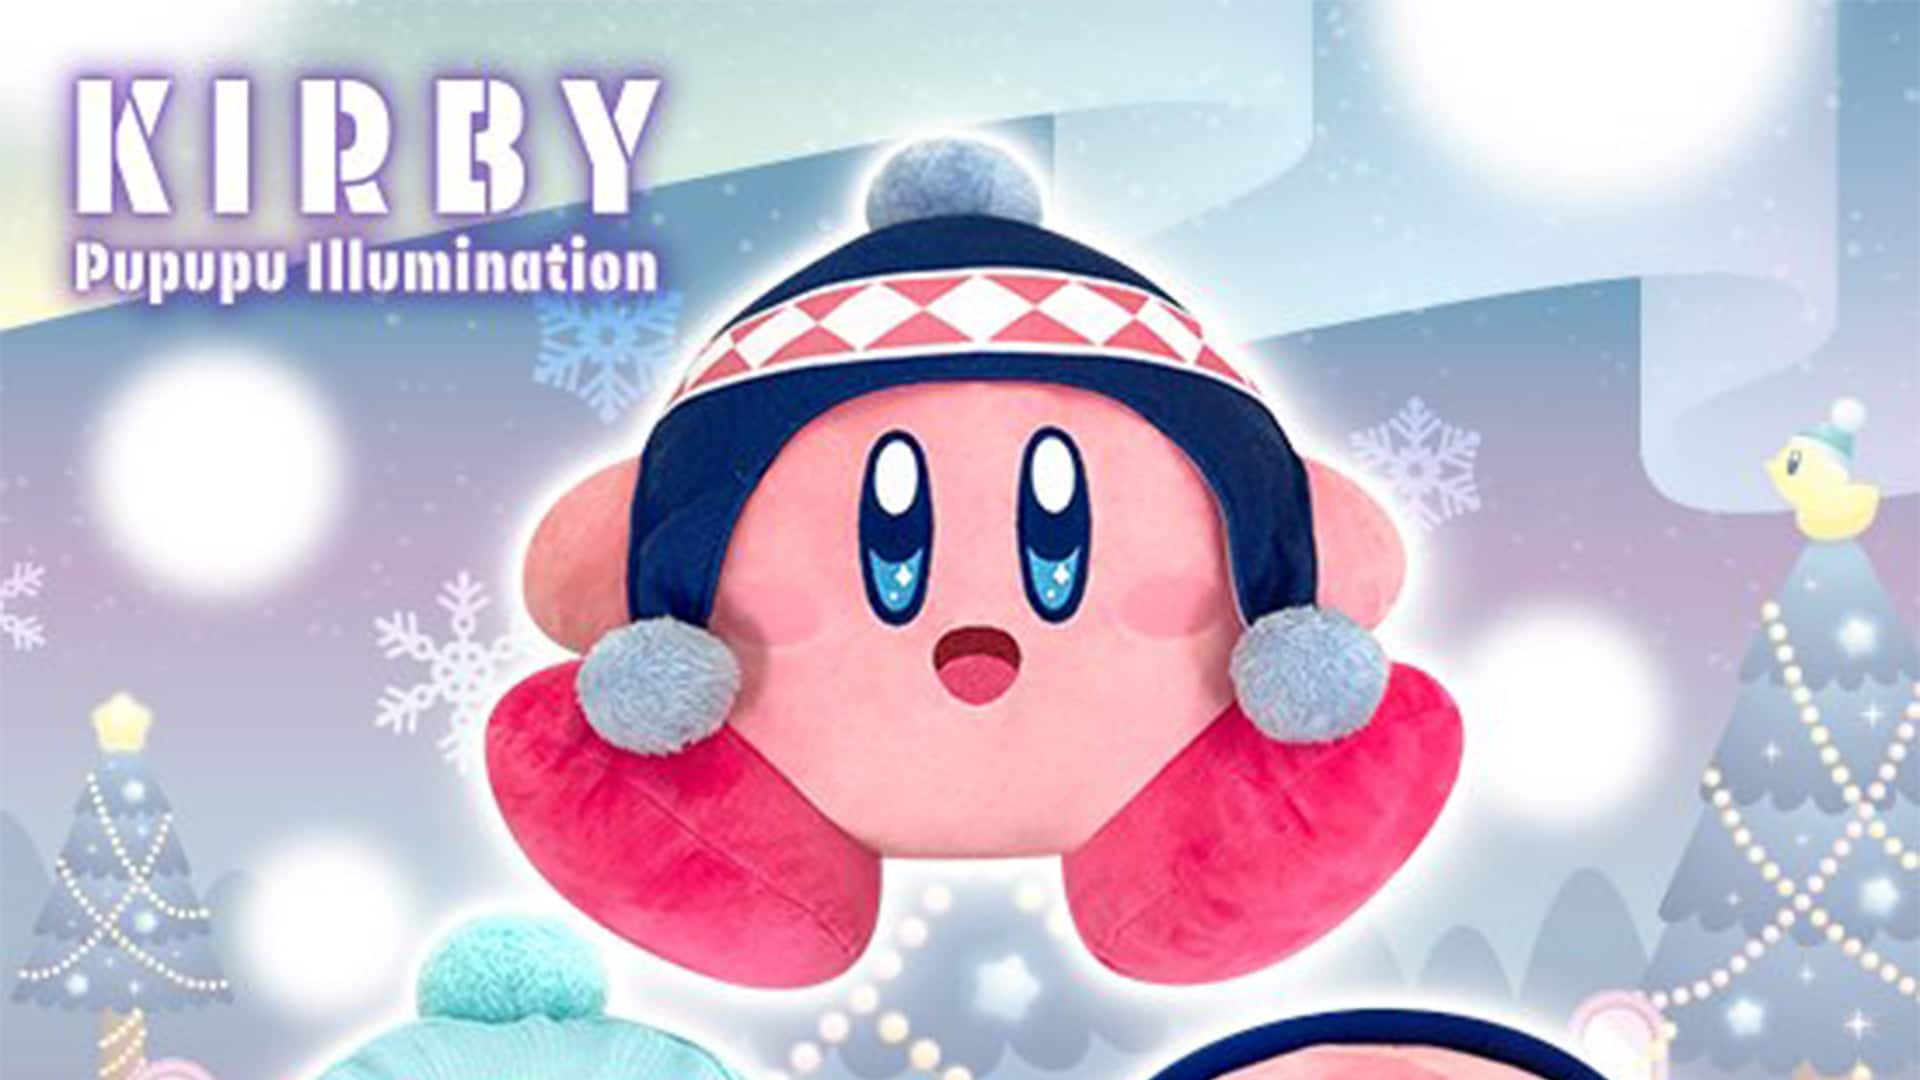 La nueva colección de merchandising Pupupu Illumination de Kirby trae consigo estos artículos con un aire muy invernal